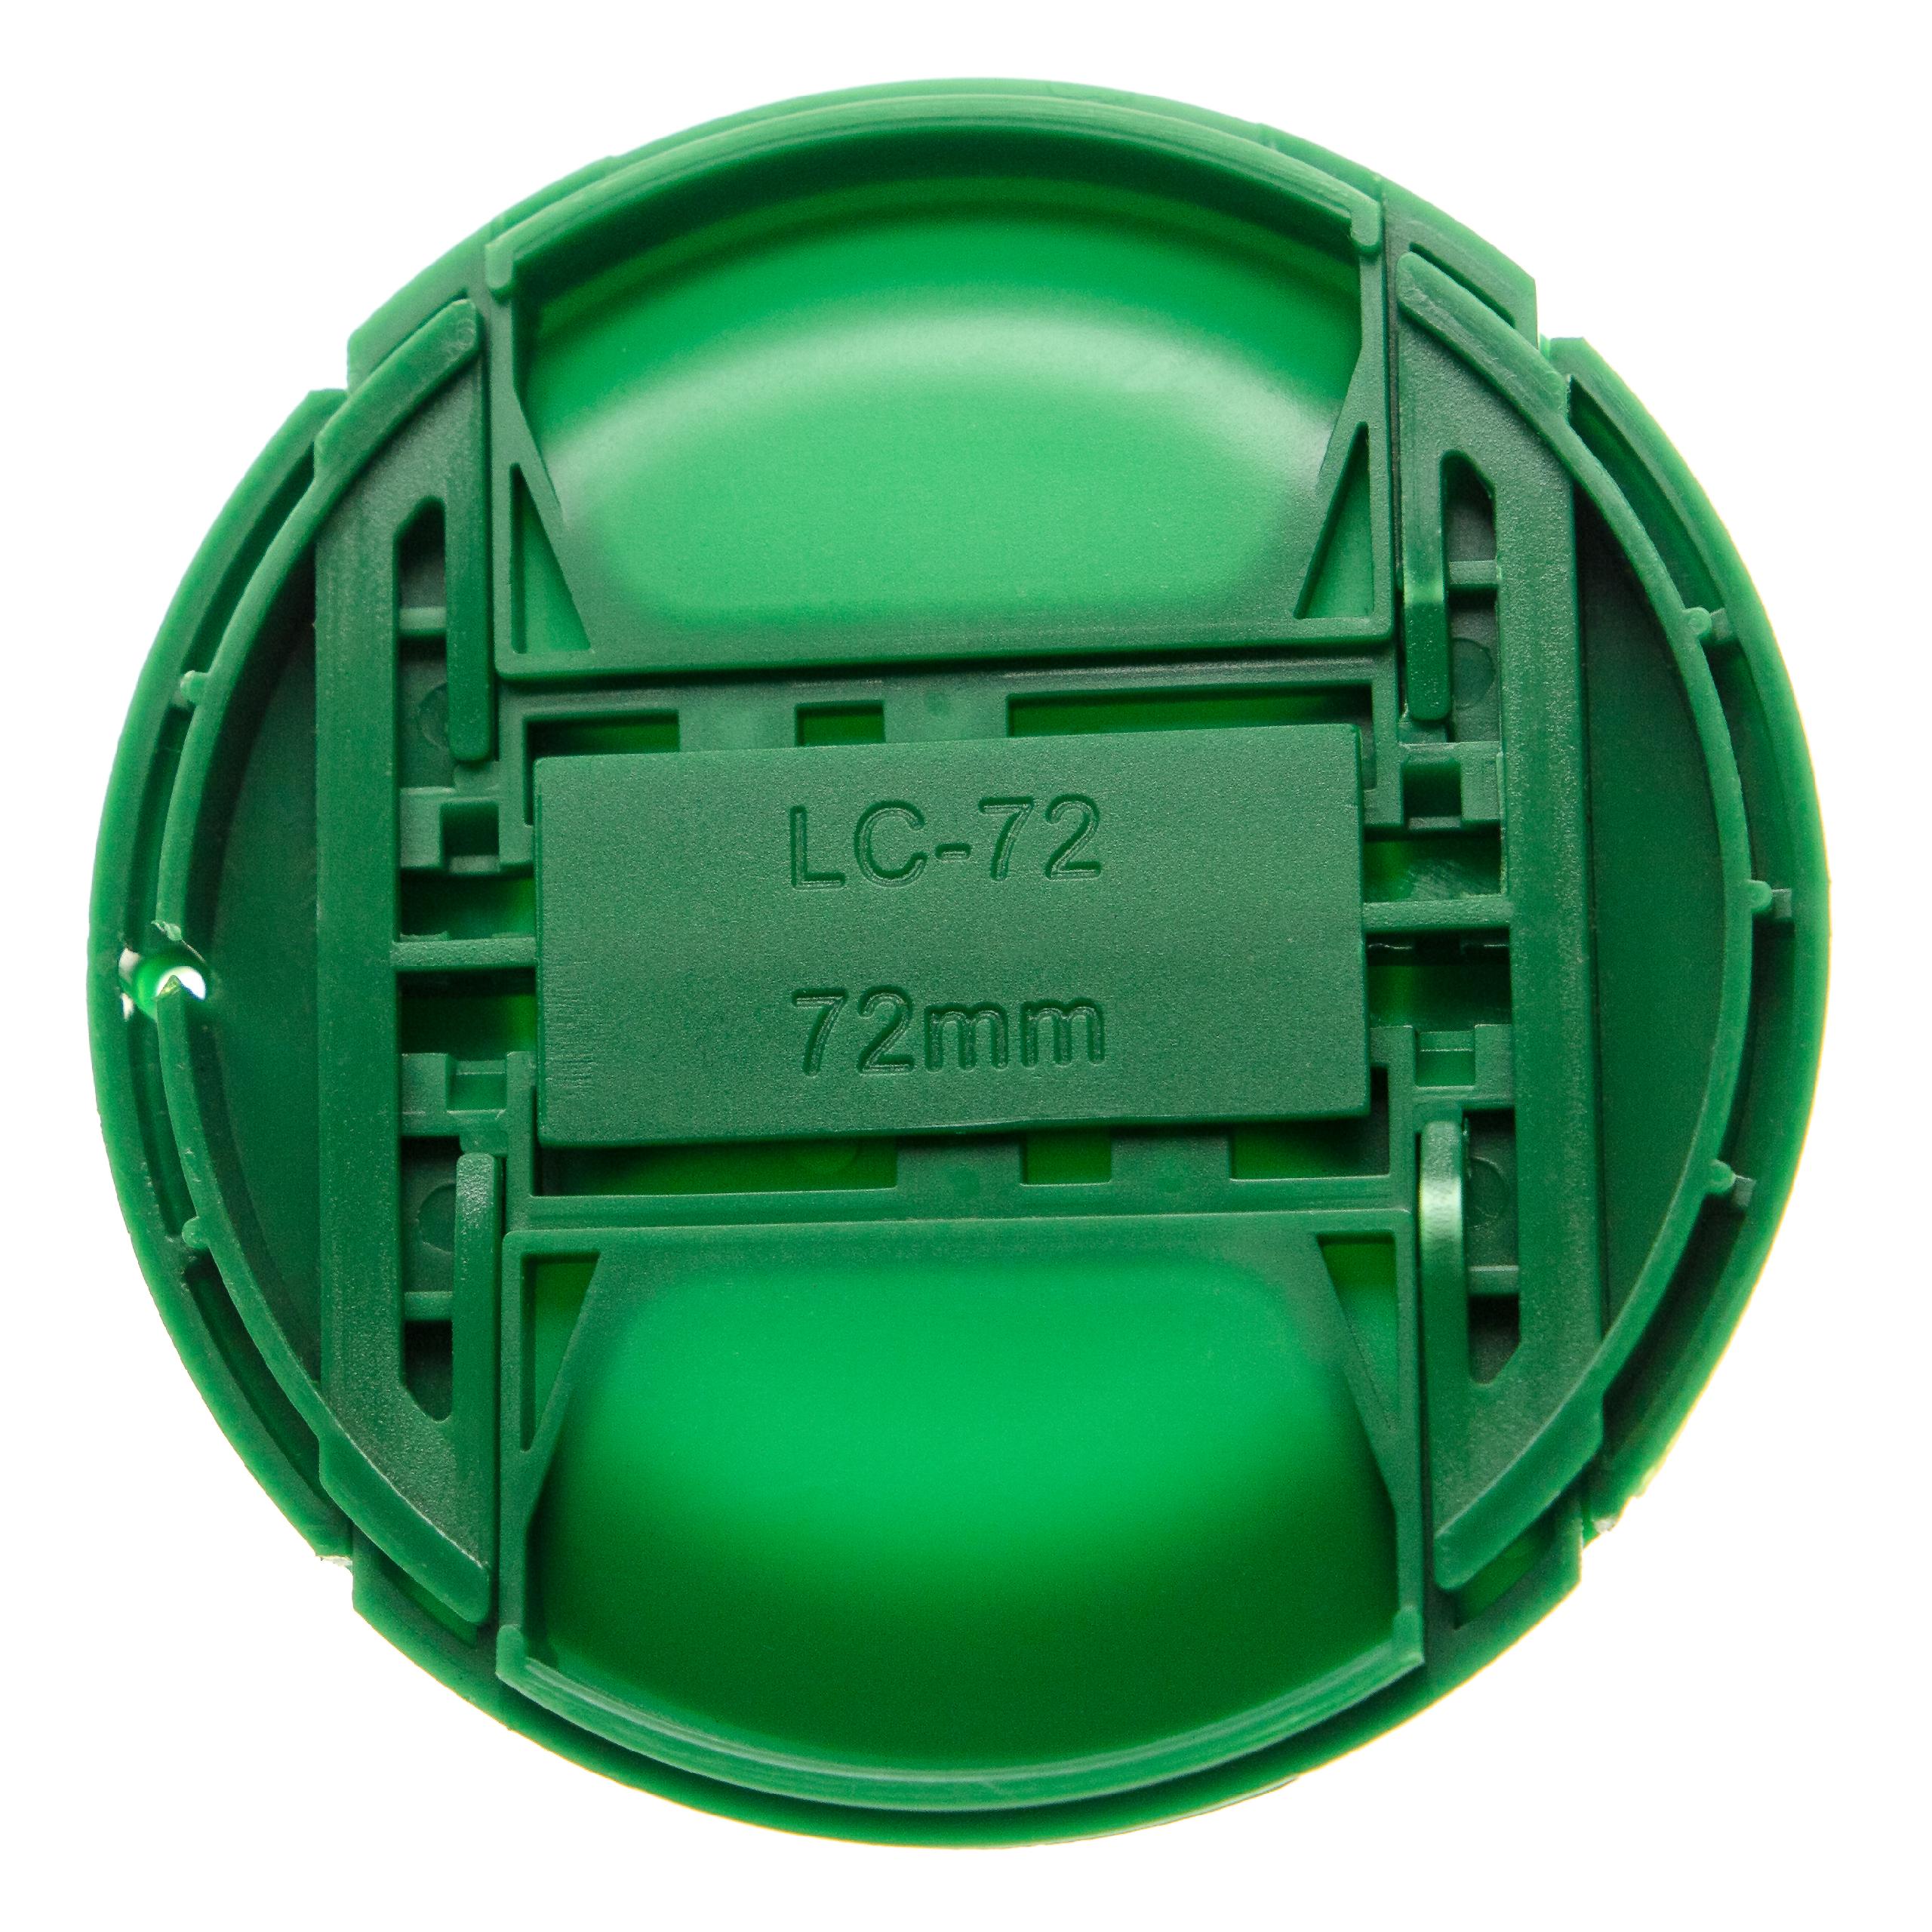 Objektivdeckel 72 mm - Mit Innengriff, Kunststoff, Grün